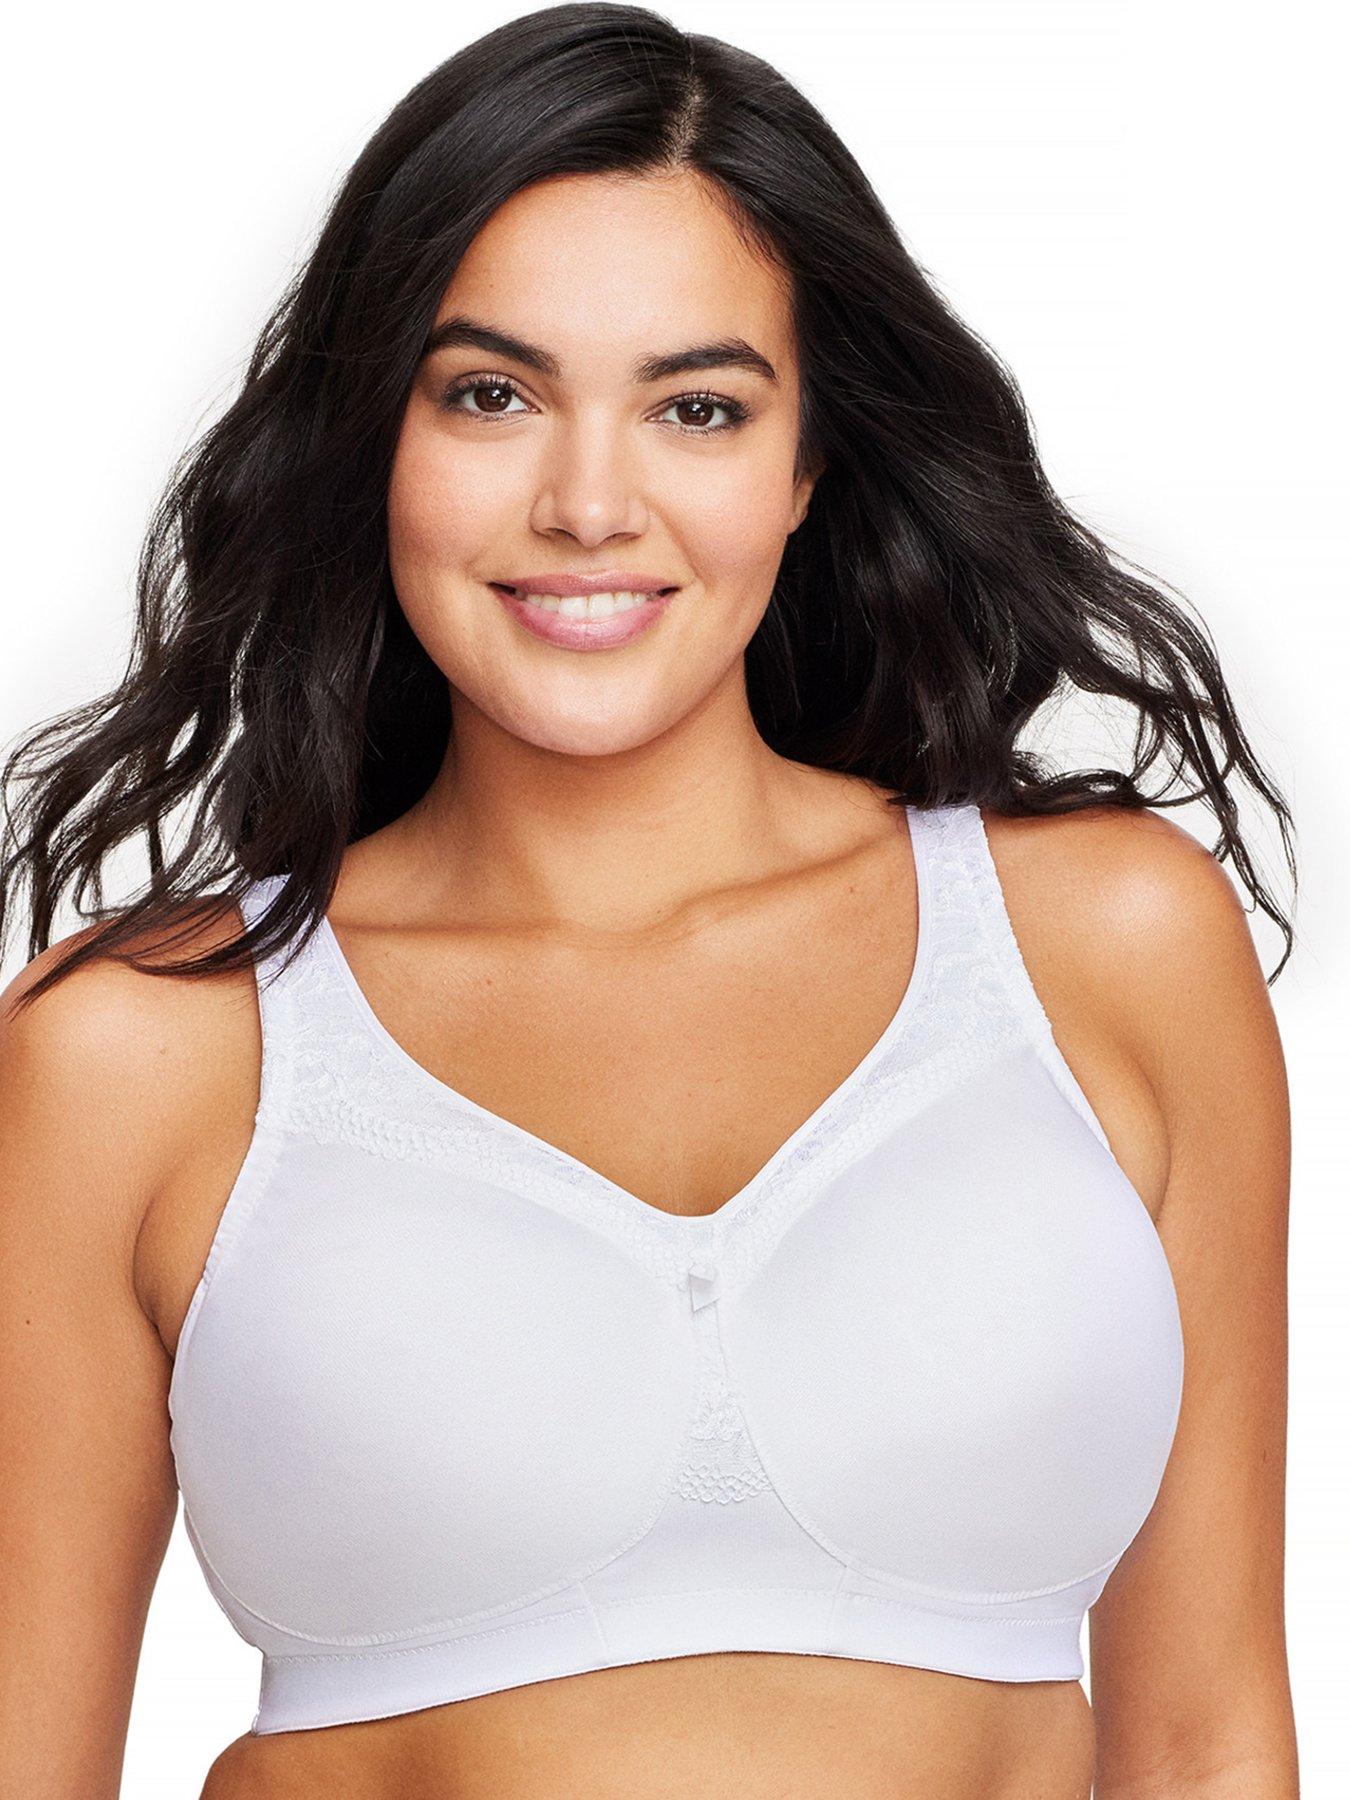 Glamorise MagicLift Size 38C White Seamless Support T-Shirt Bra